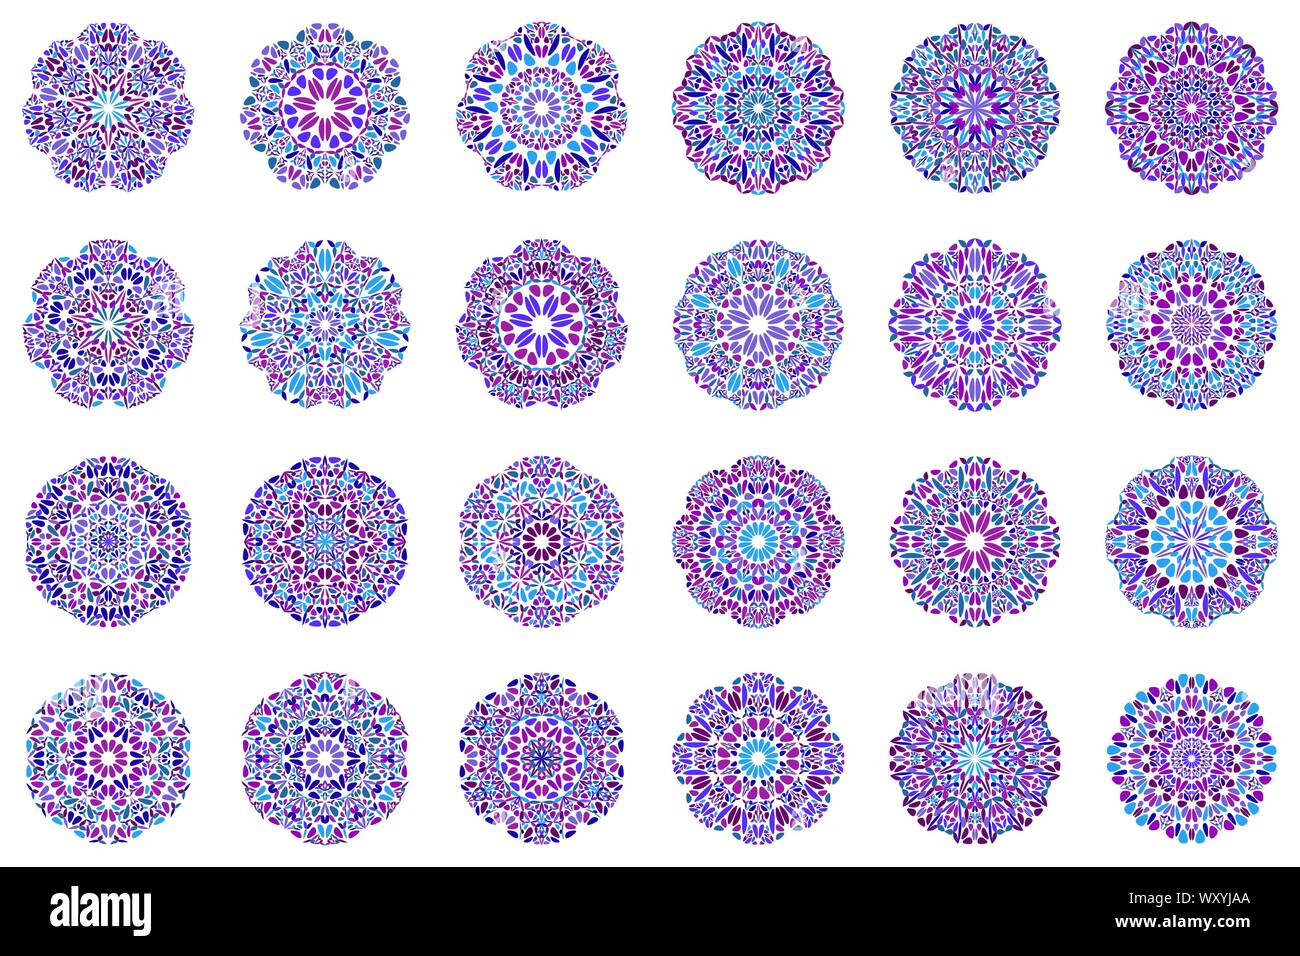 Reich verzierte Blumenmuster mandala Symbol gesetzt - runde abstrakte Rundschreiben Vektorgrafiken aus geschwungenen Formen Stock Vektor